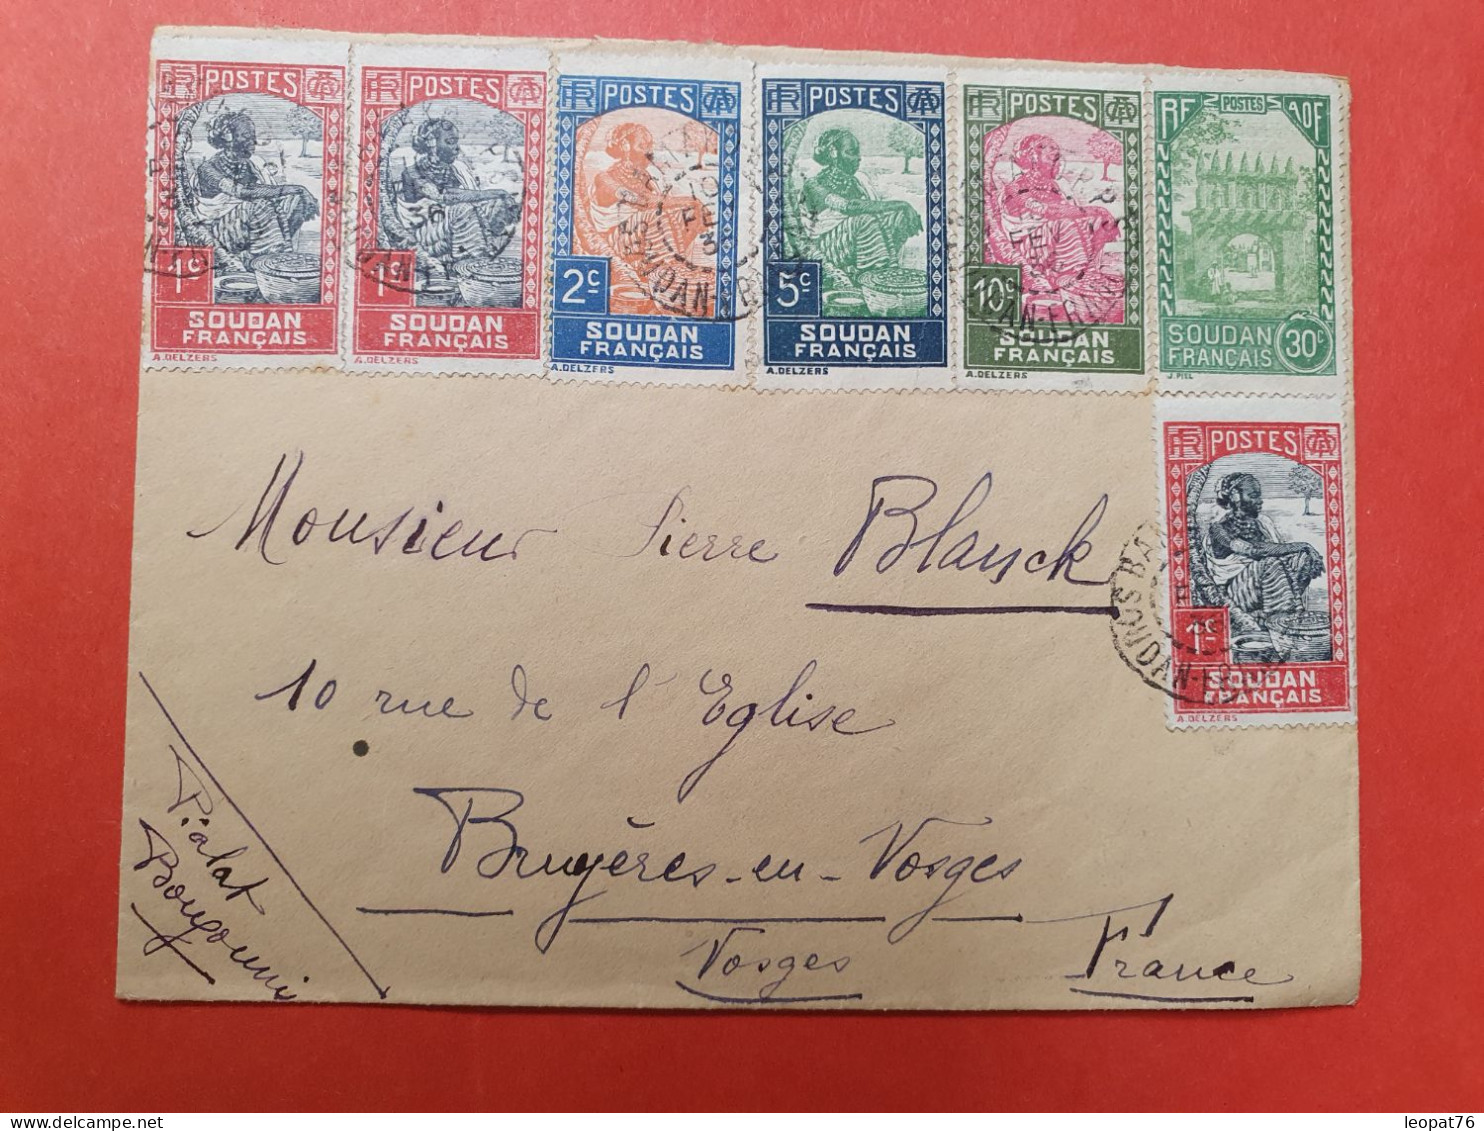 Soudan - Enveloppe De Bamako Pour La France En 1936, Affranchissement Varié  - D 14 - Covers & Documents